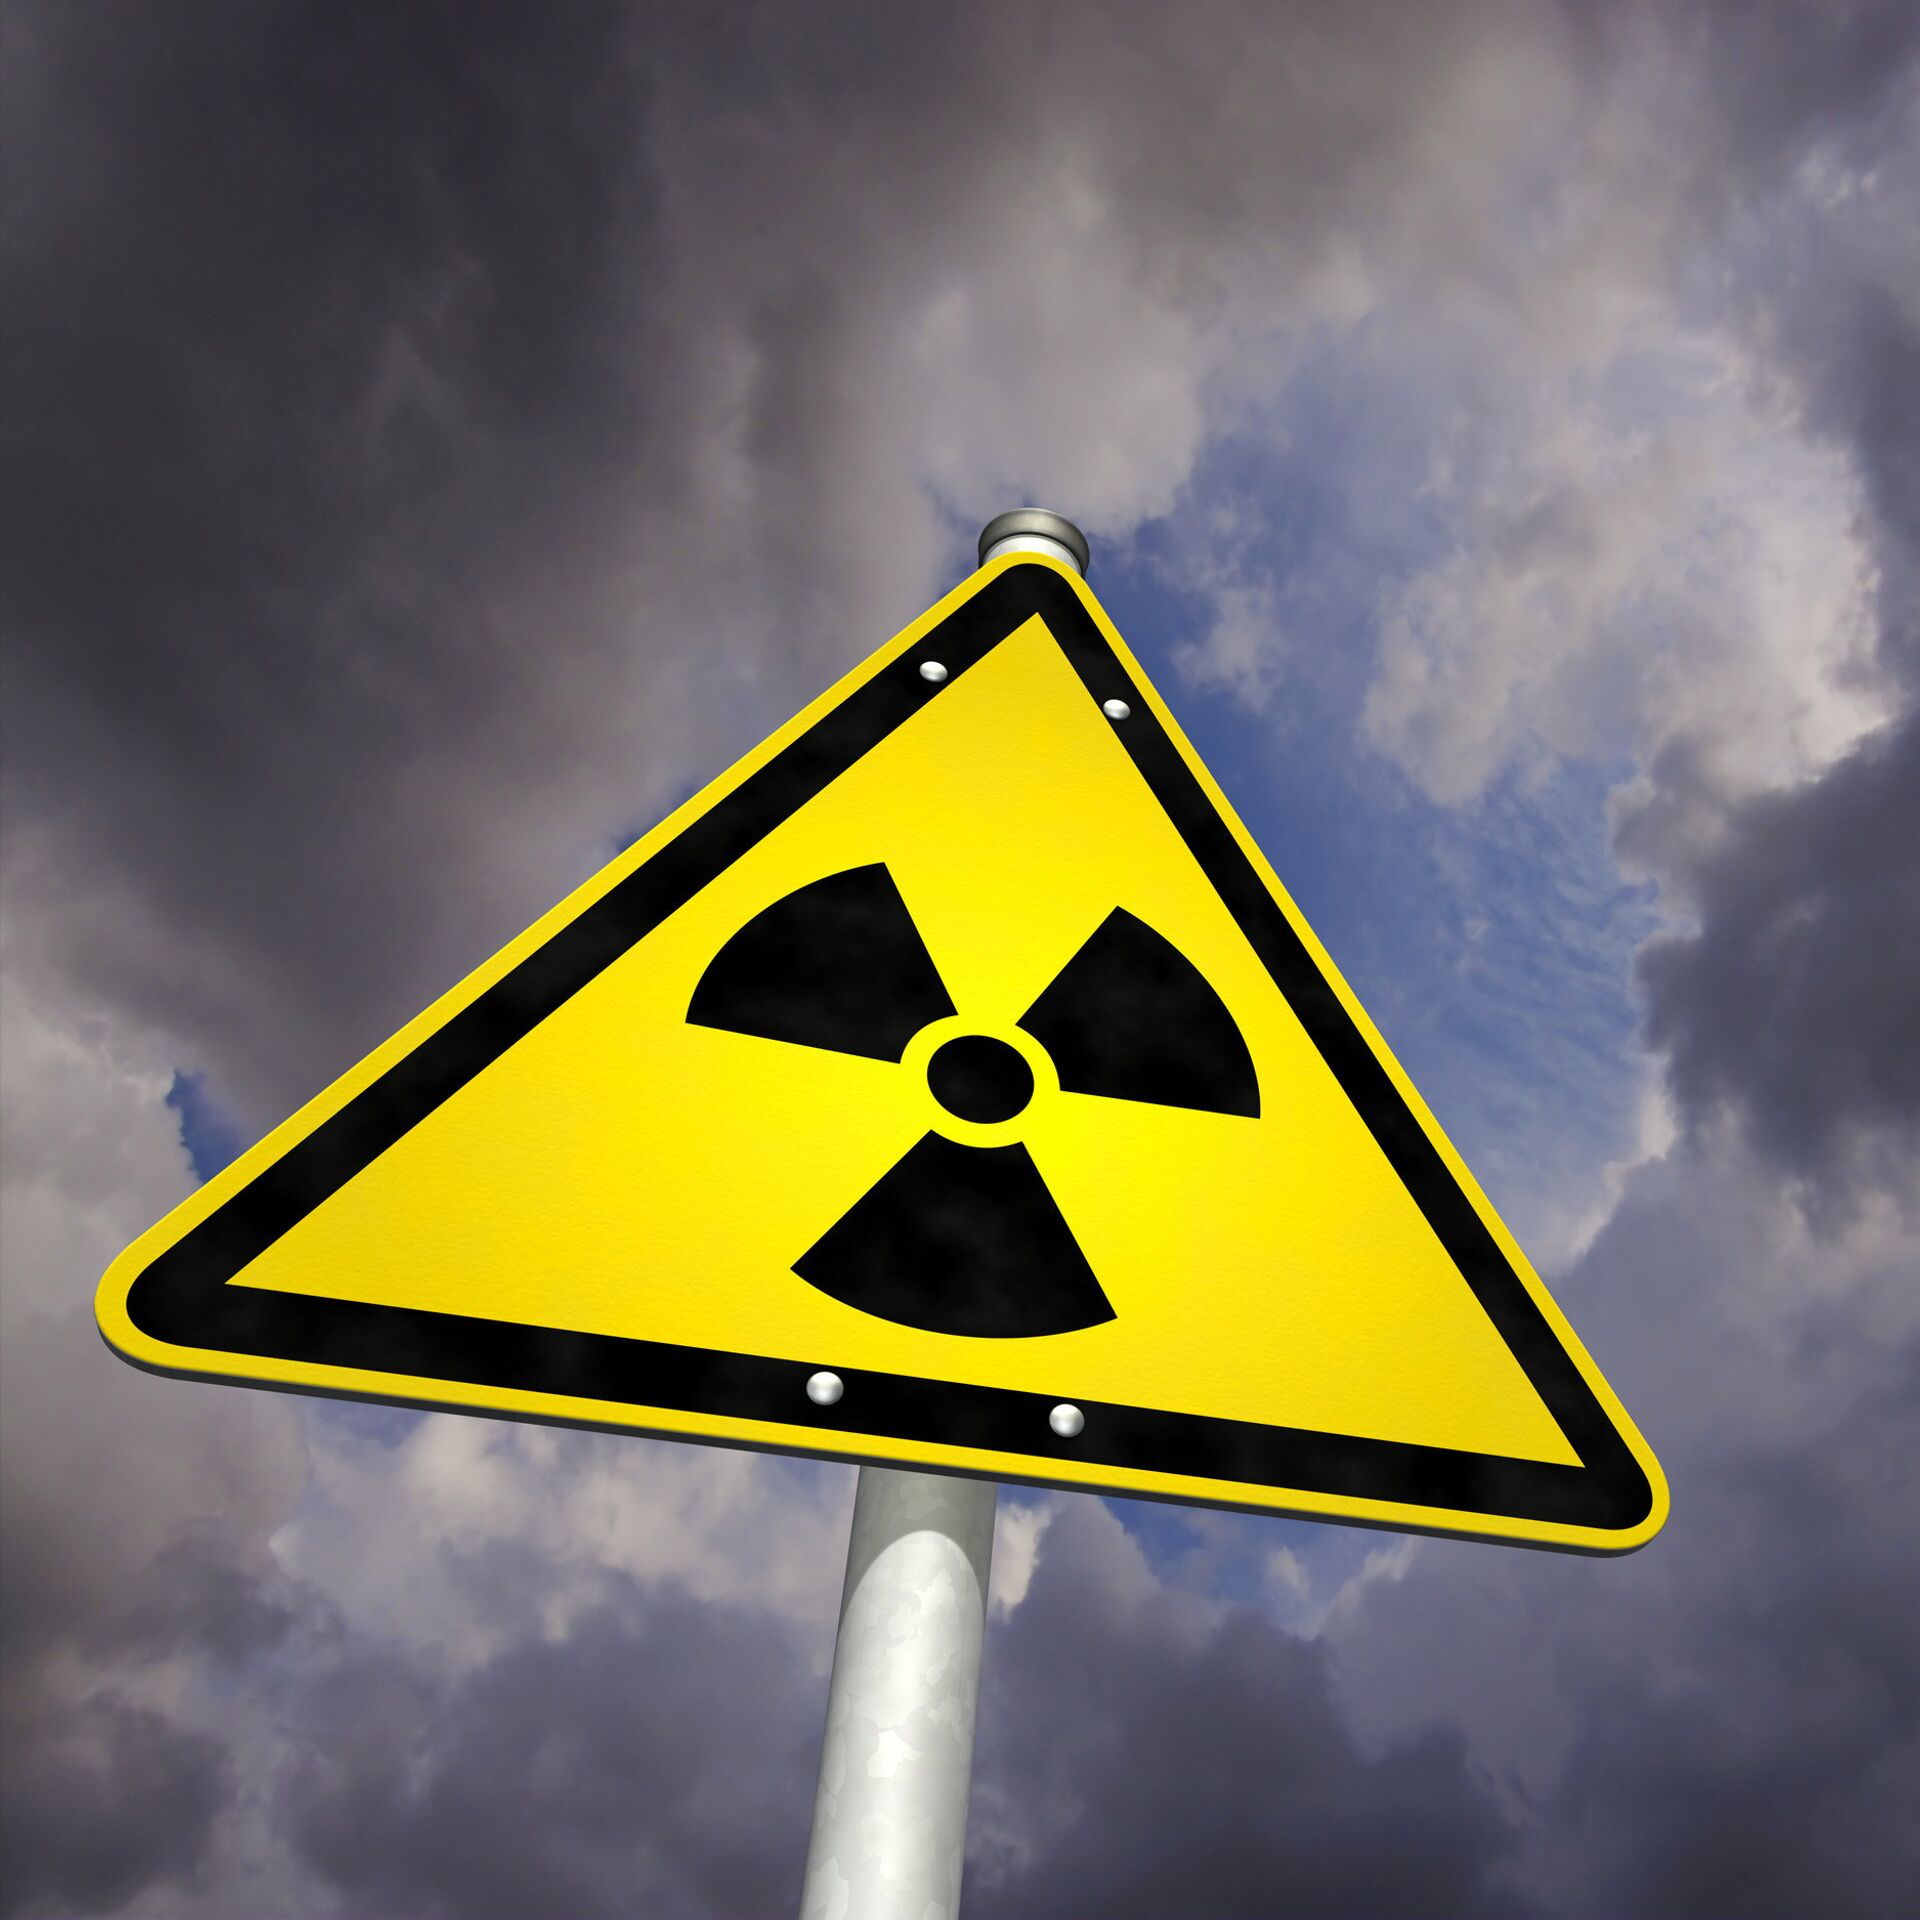 Доклад: Проблема жидких радиационных отходов в Томской области